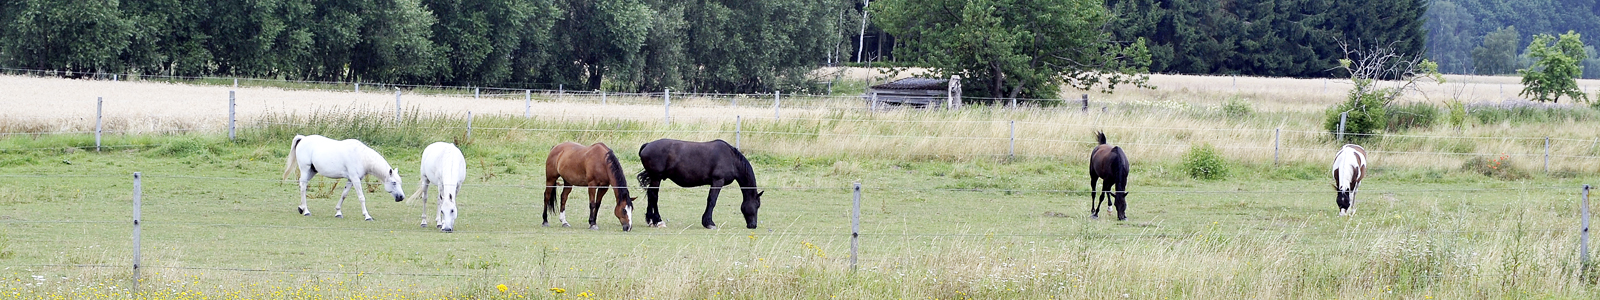 Pferde auf einer Weide ©Feuerbach